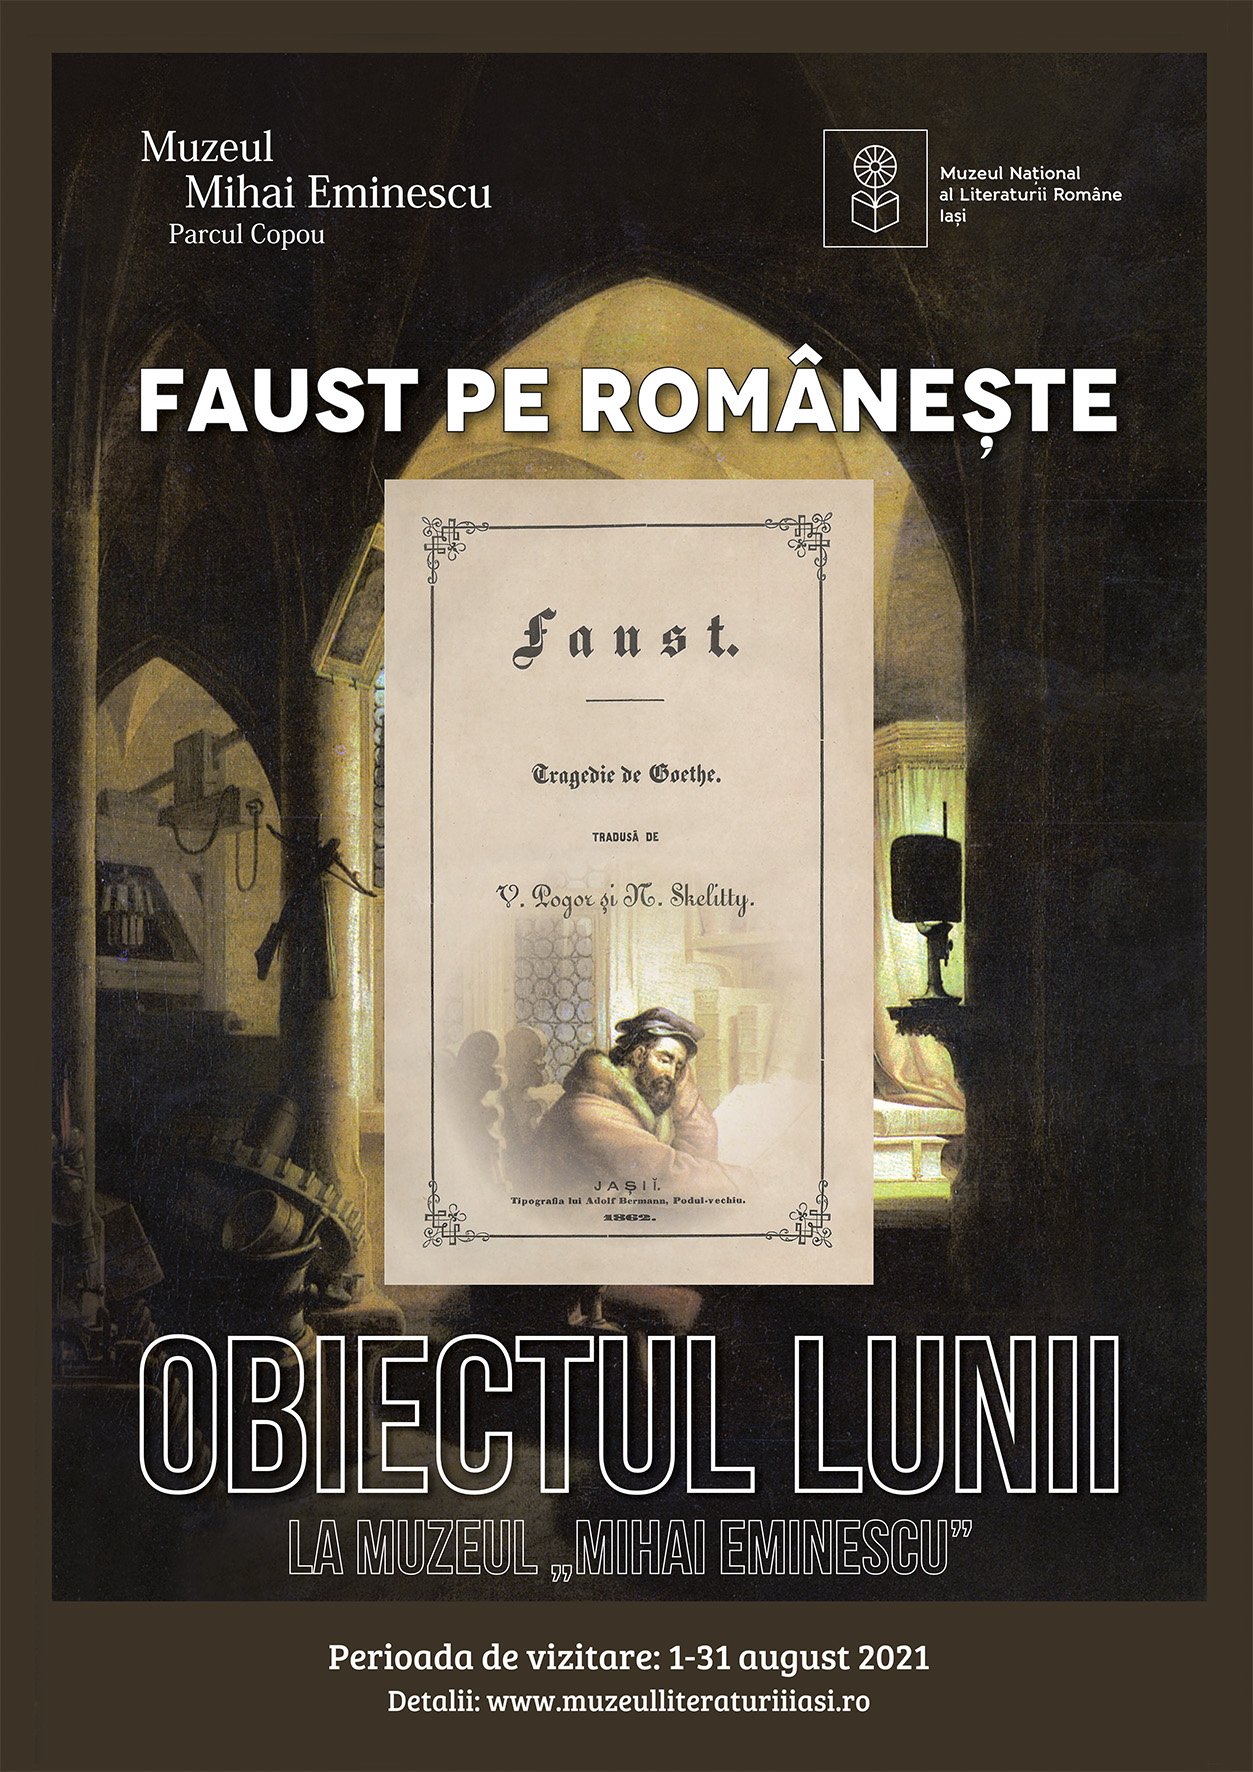  O traducere a lui Faust din urmă cu 150 de ani este obiectul lunii august în muzeele ieşene